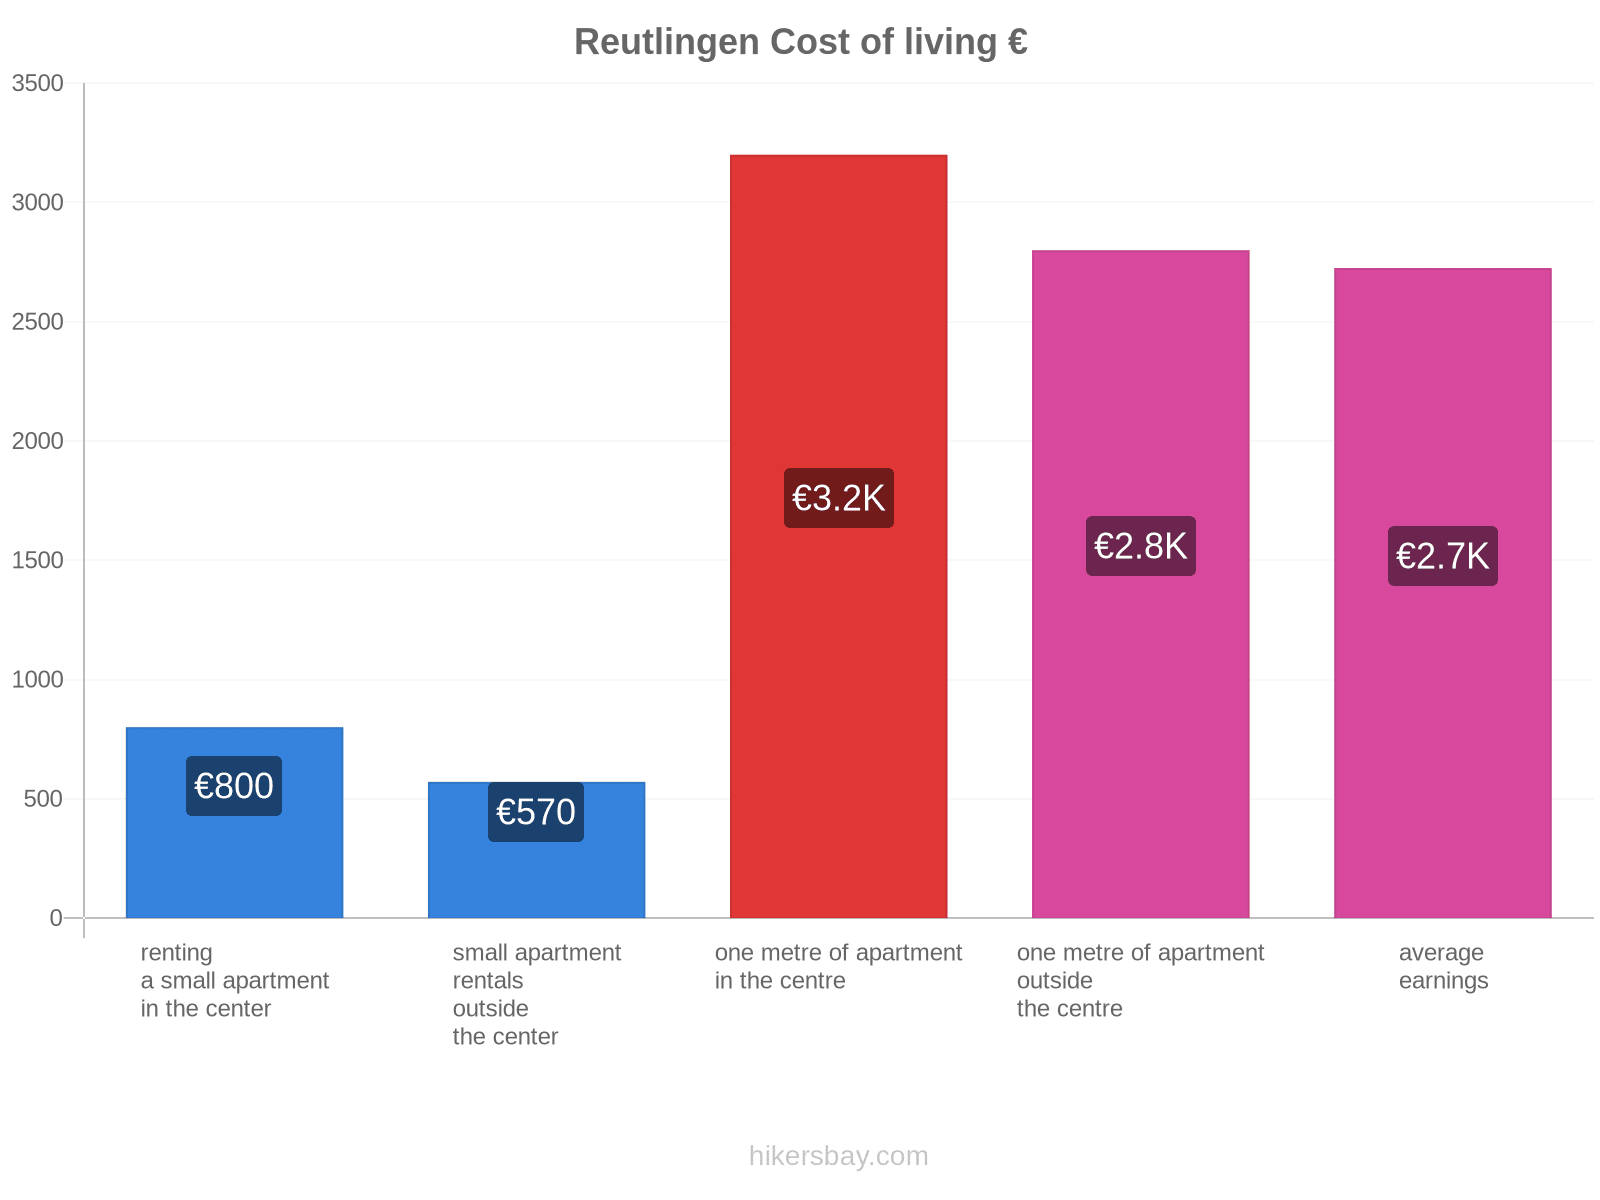 Reutlingen cost of living hikersbay.com